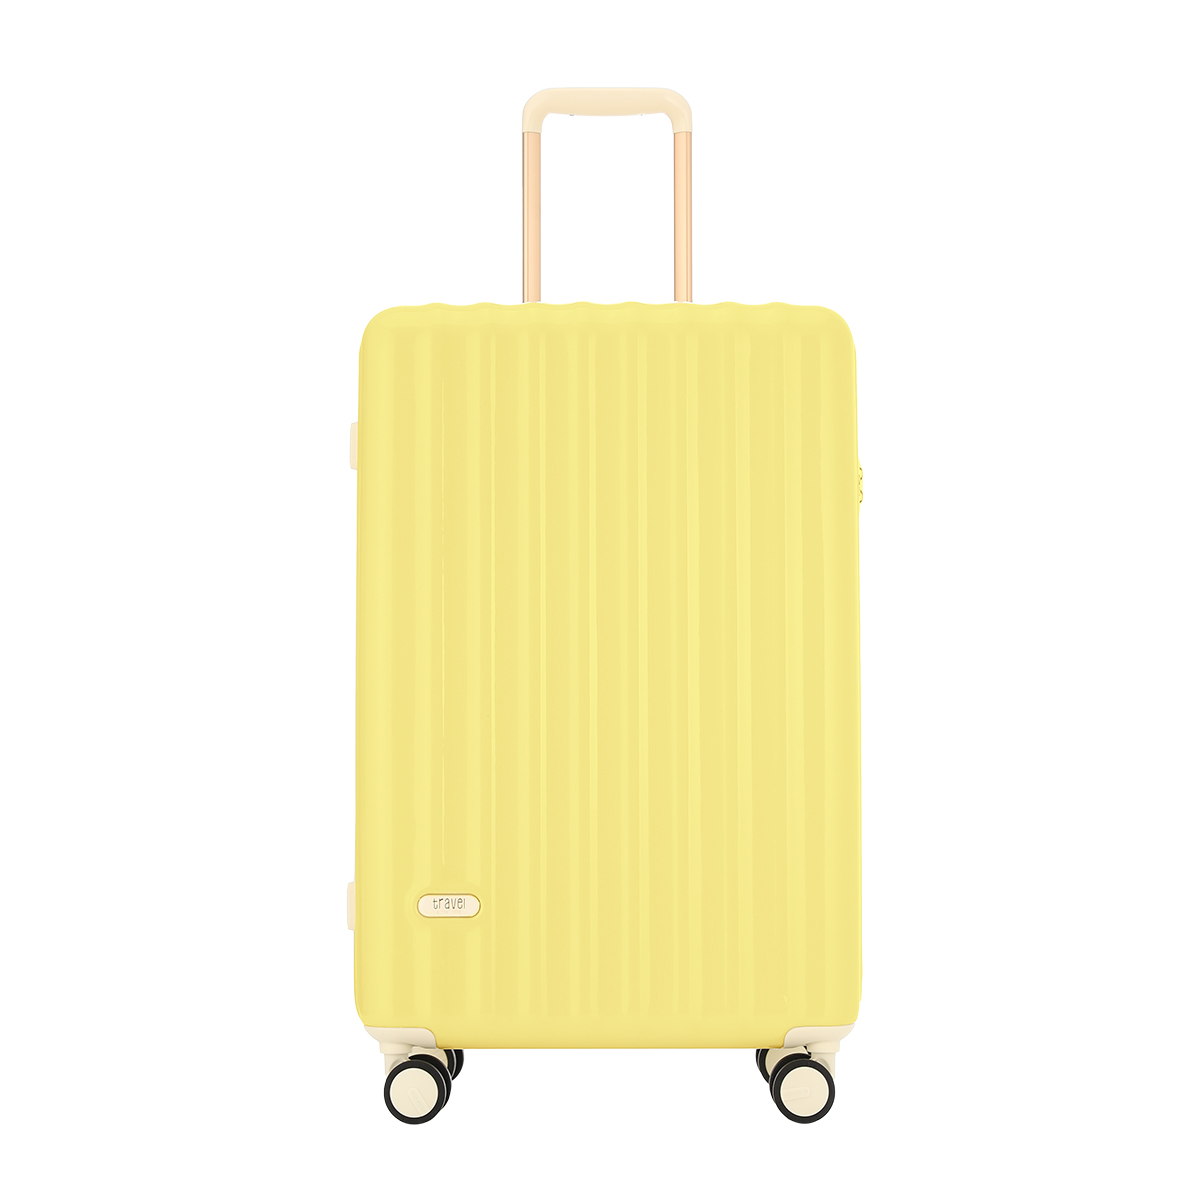 キャリーバッグ スーツケース 機内持ち込み M サイズ 軽量 小型 大型 ハードタイプ キャリーケース キャリー 60L おしゃれ かわいい  くすみカラー 女子旅